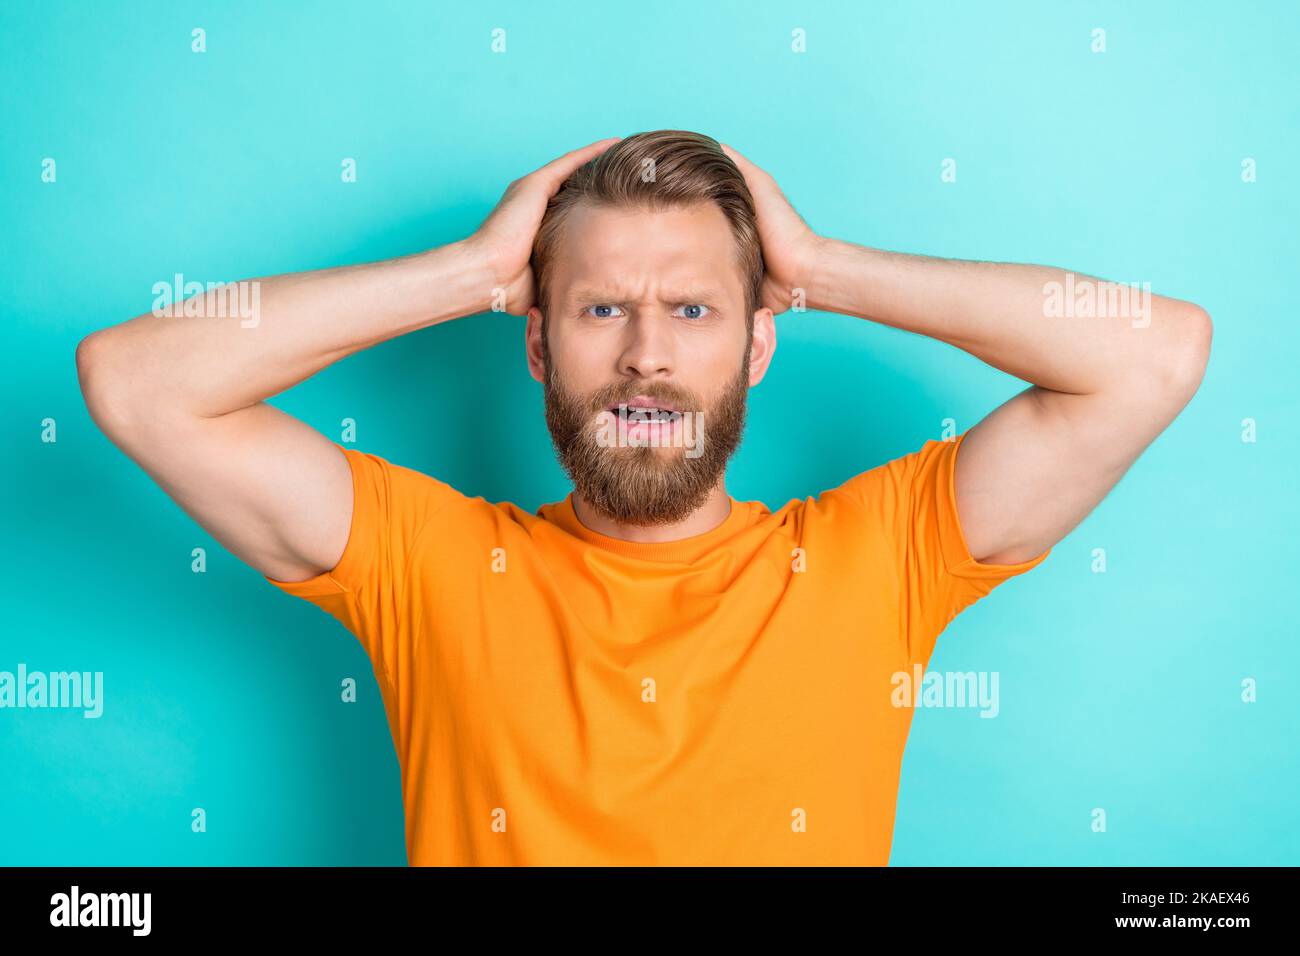 Foto dell'uomo stressante e infelice con i capelli biondi, le braccia della maglietta arancione vestite sulla testa fissando isolato su sfondo di colore teal Foto Stock